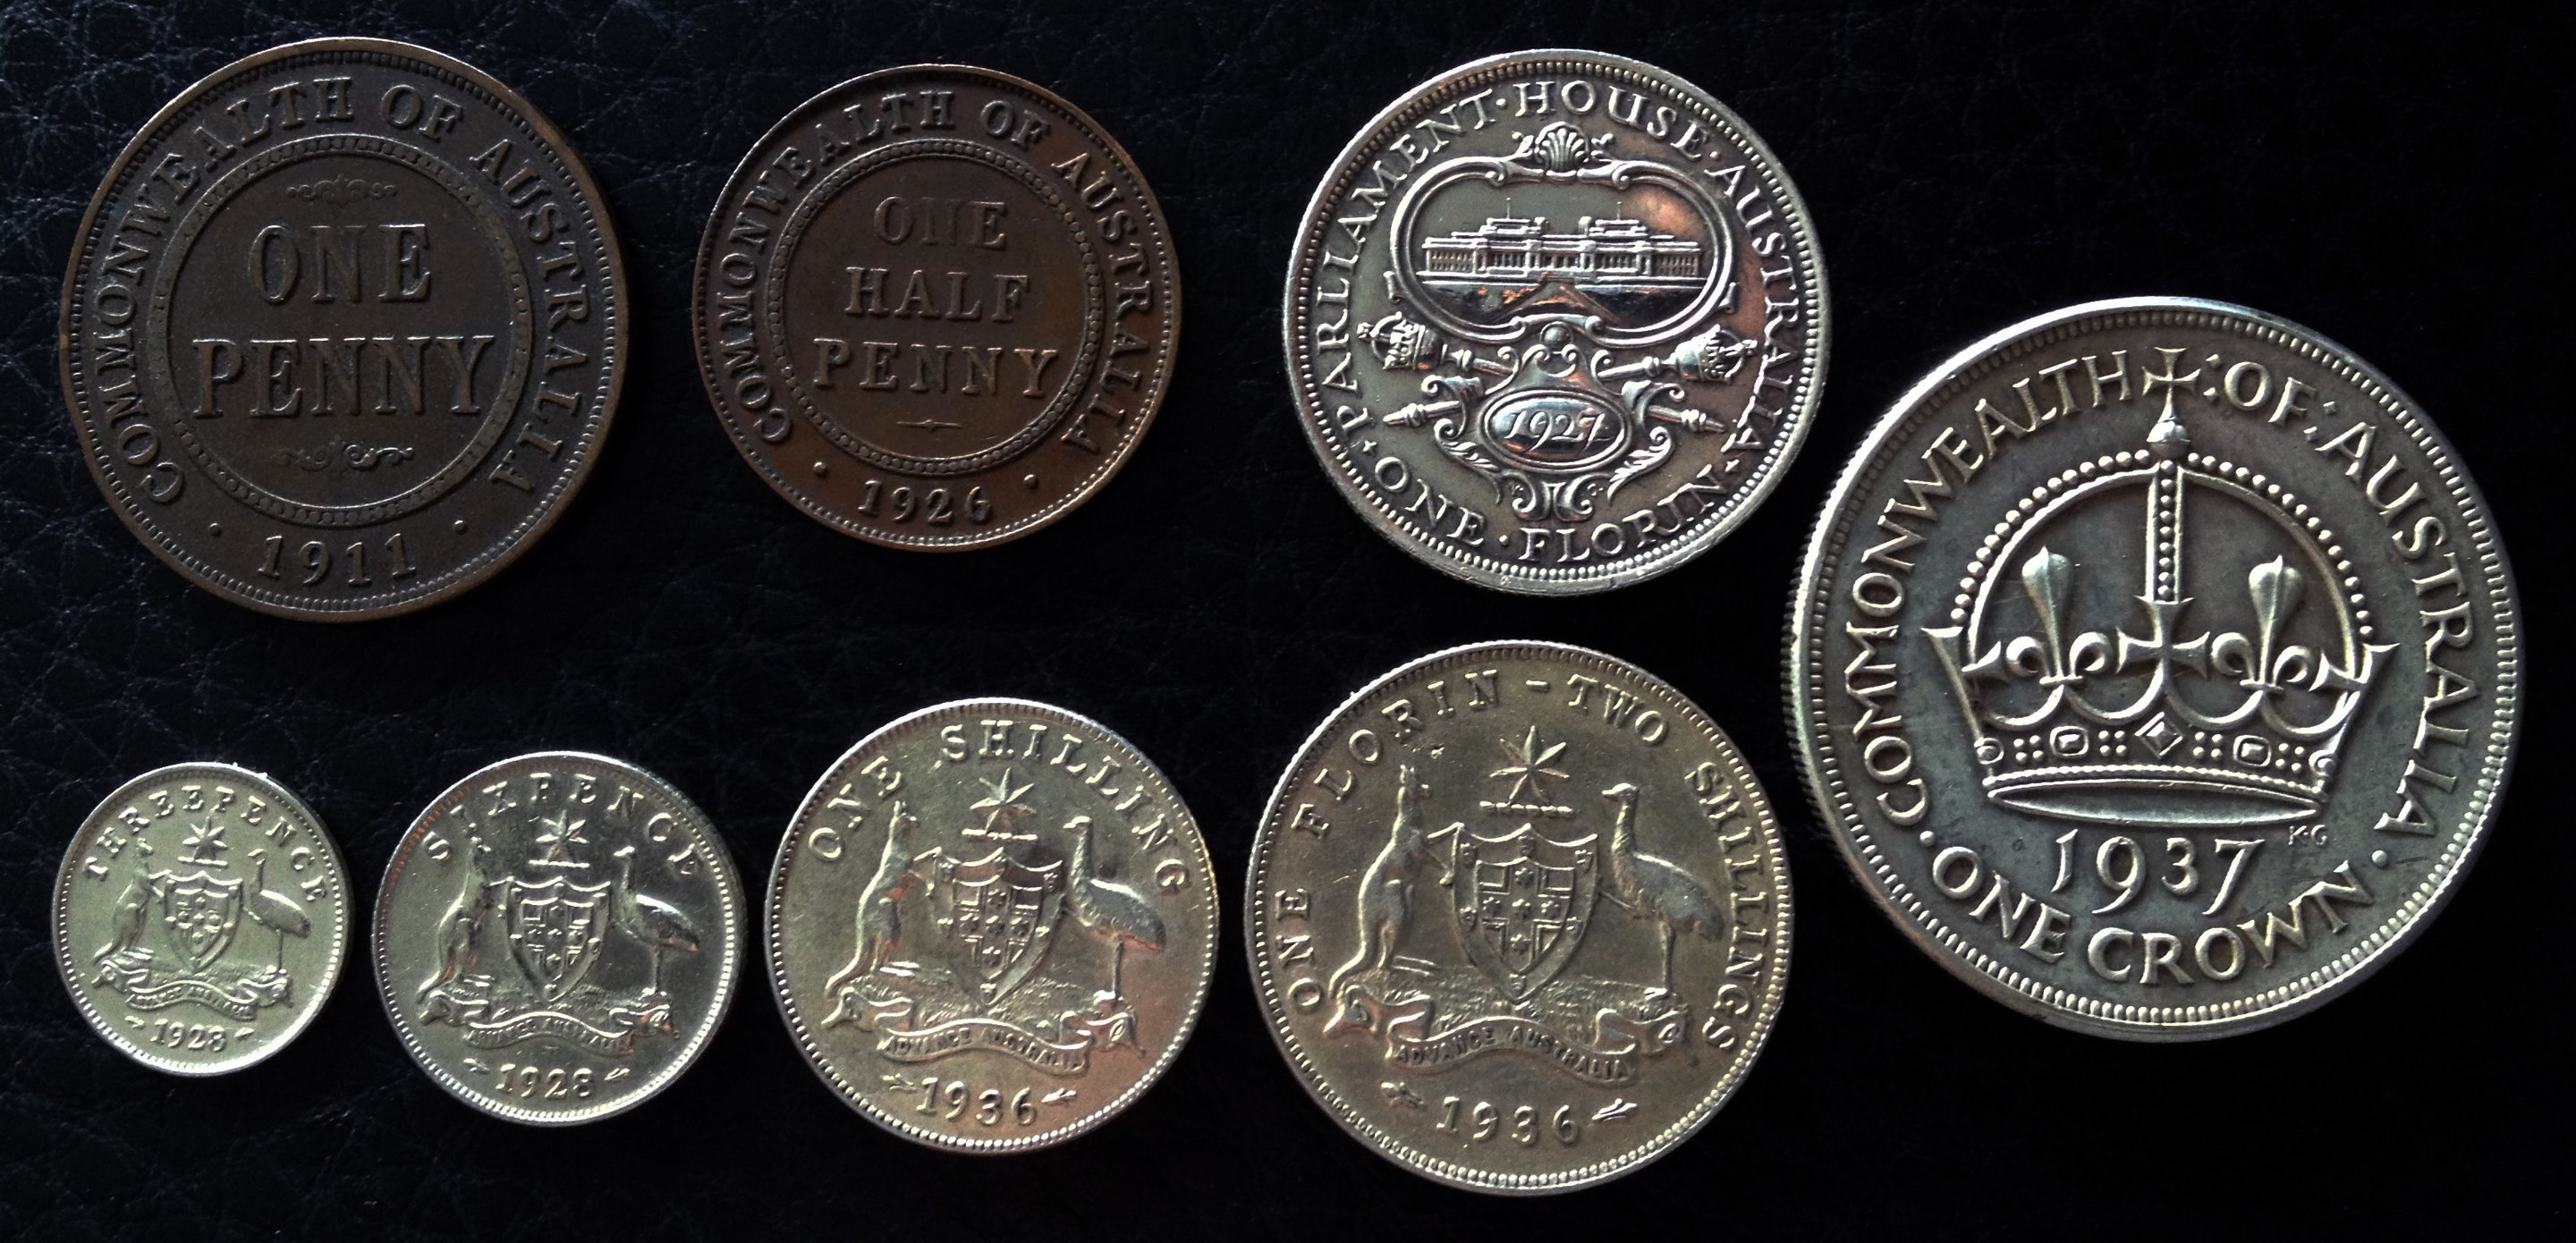 Australian pre-decimal coin comparison pic.